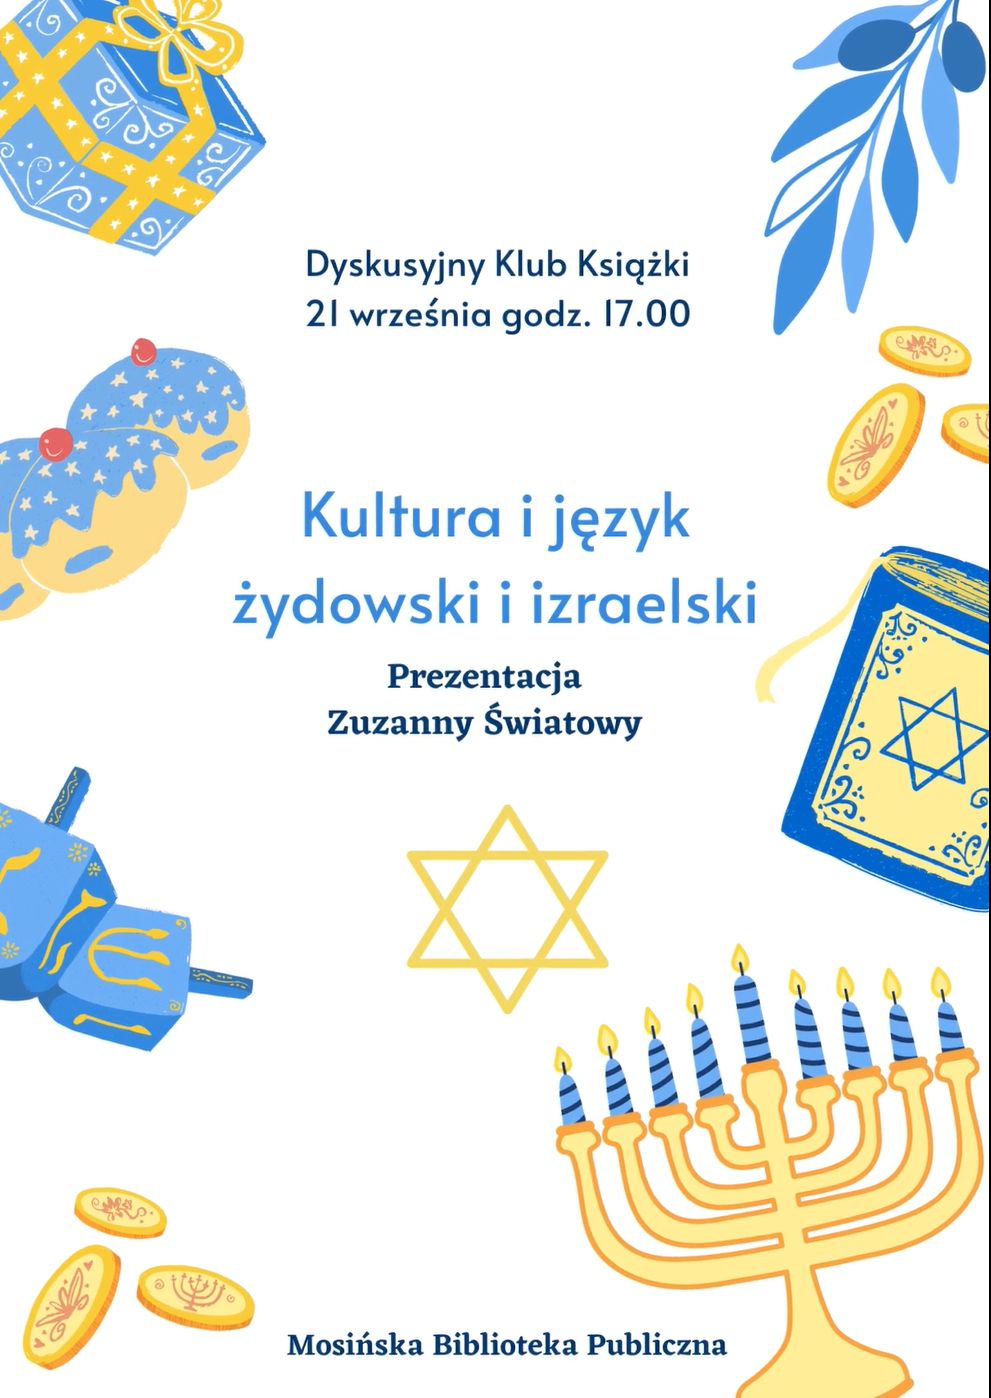 Plakat zapraszający na spotkanie z kulturą żydowską 21 września o godz. 17